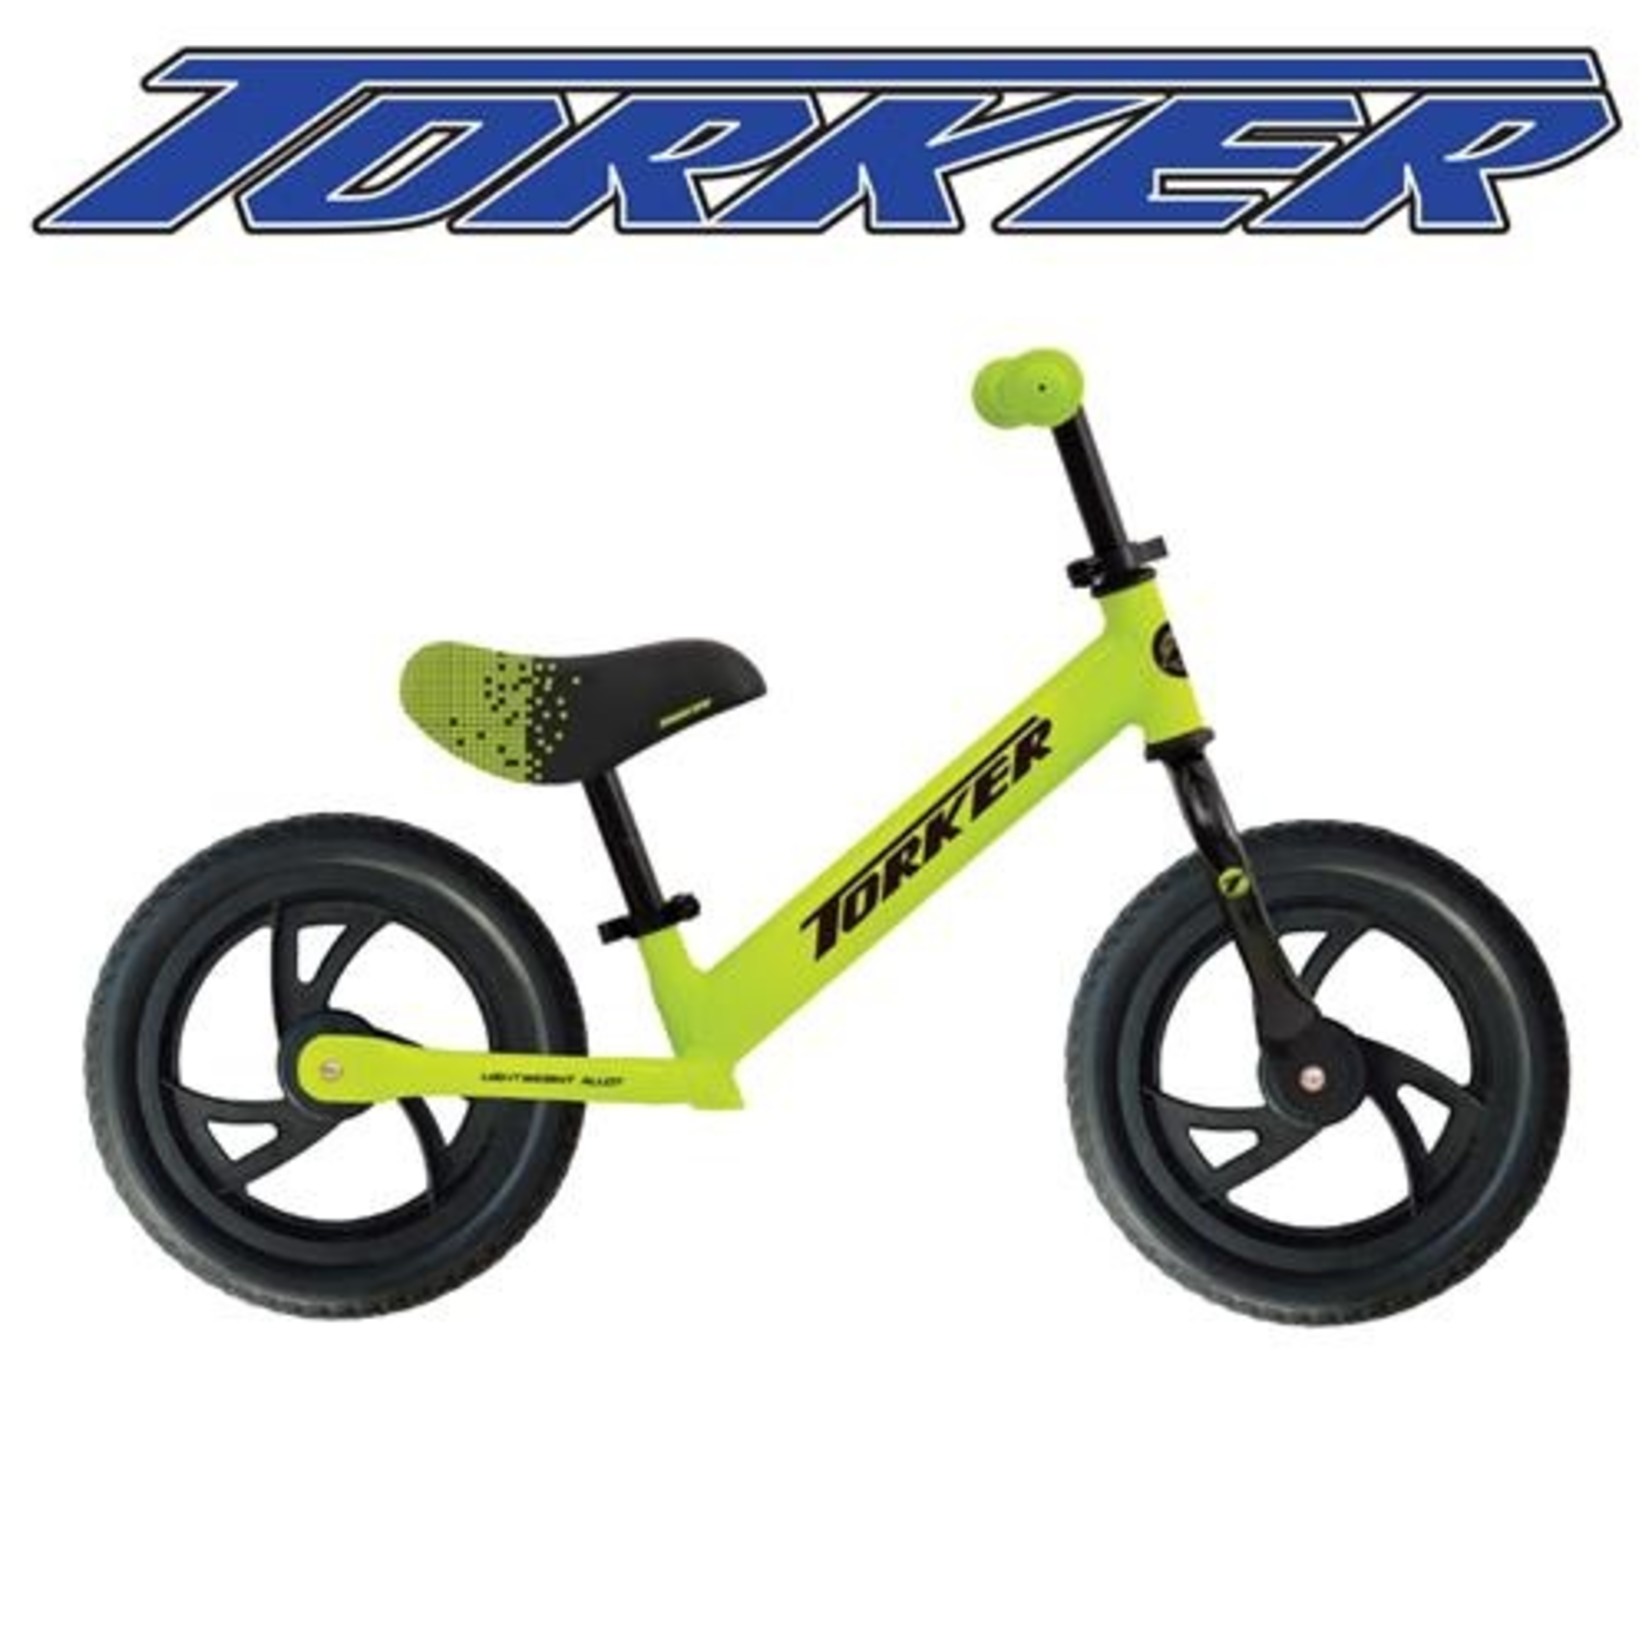 Torker Torker Kid Balance Bike Wheels Suit Children 18 Months-5 Years - Neon With Black